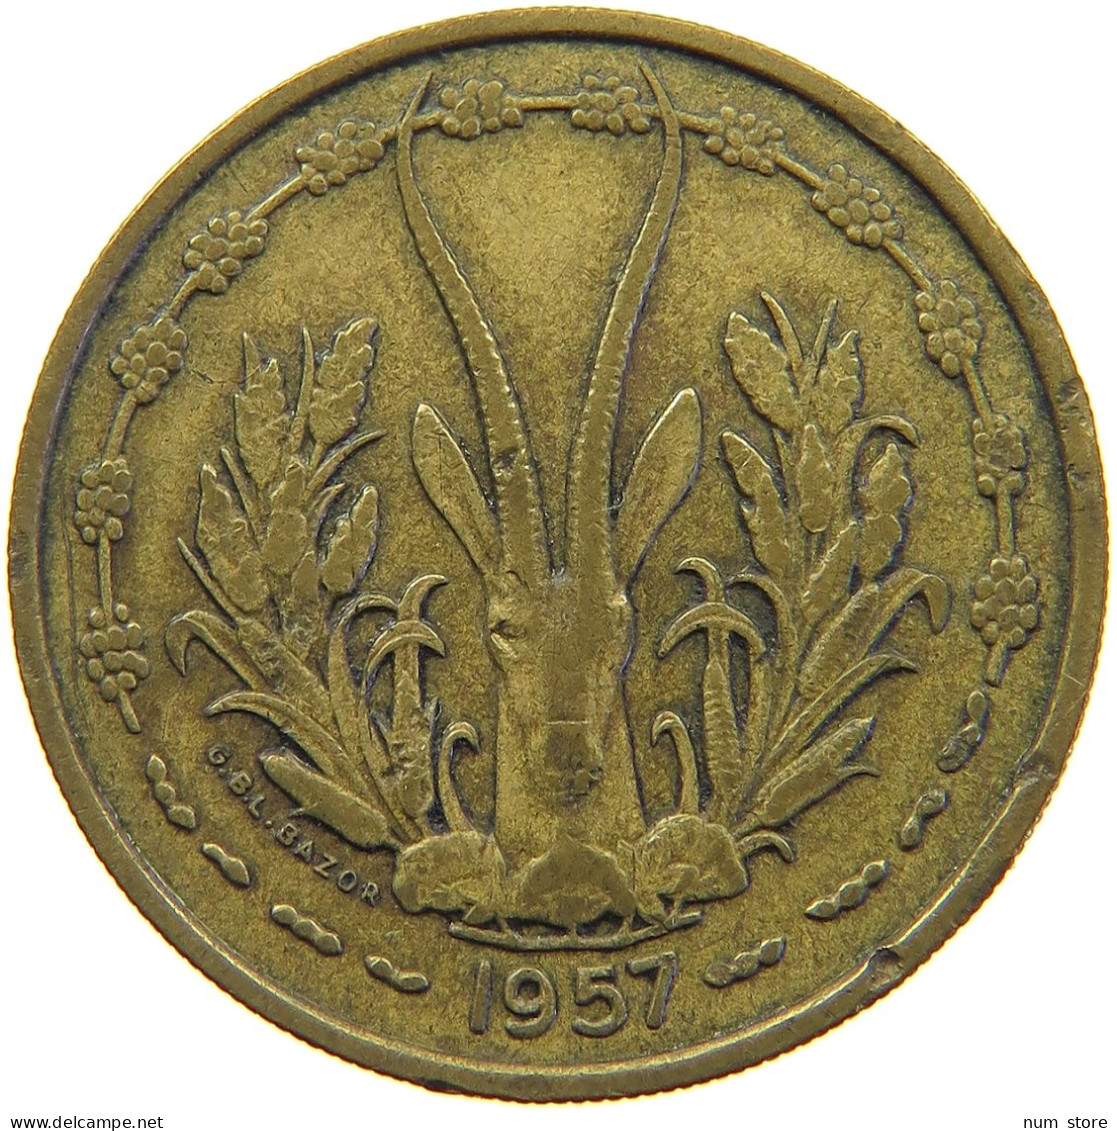 TOGO 25 FRANCS 1957  #s024 0341 - Togo